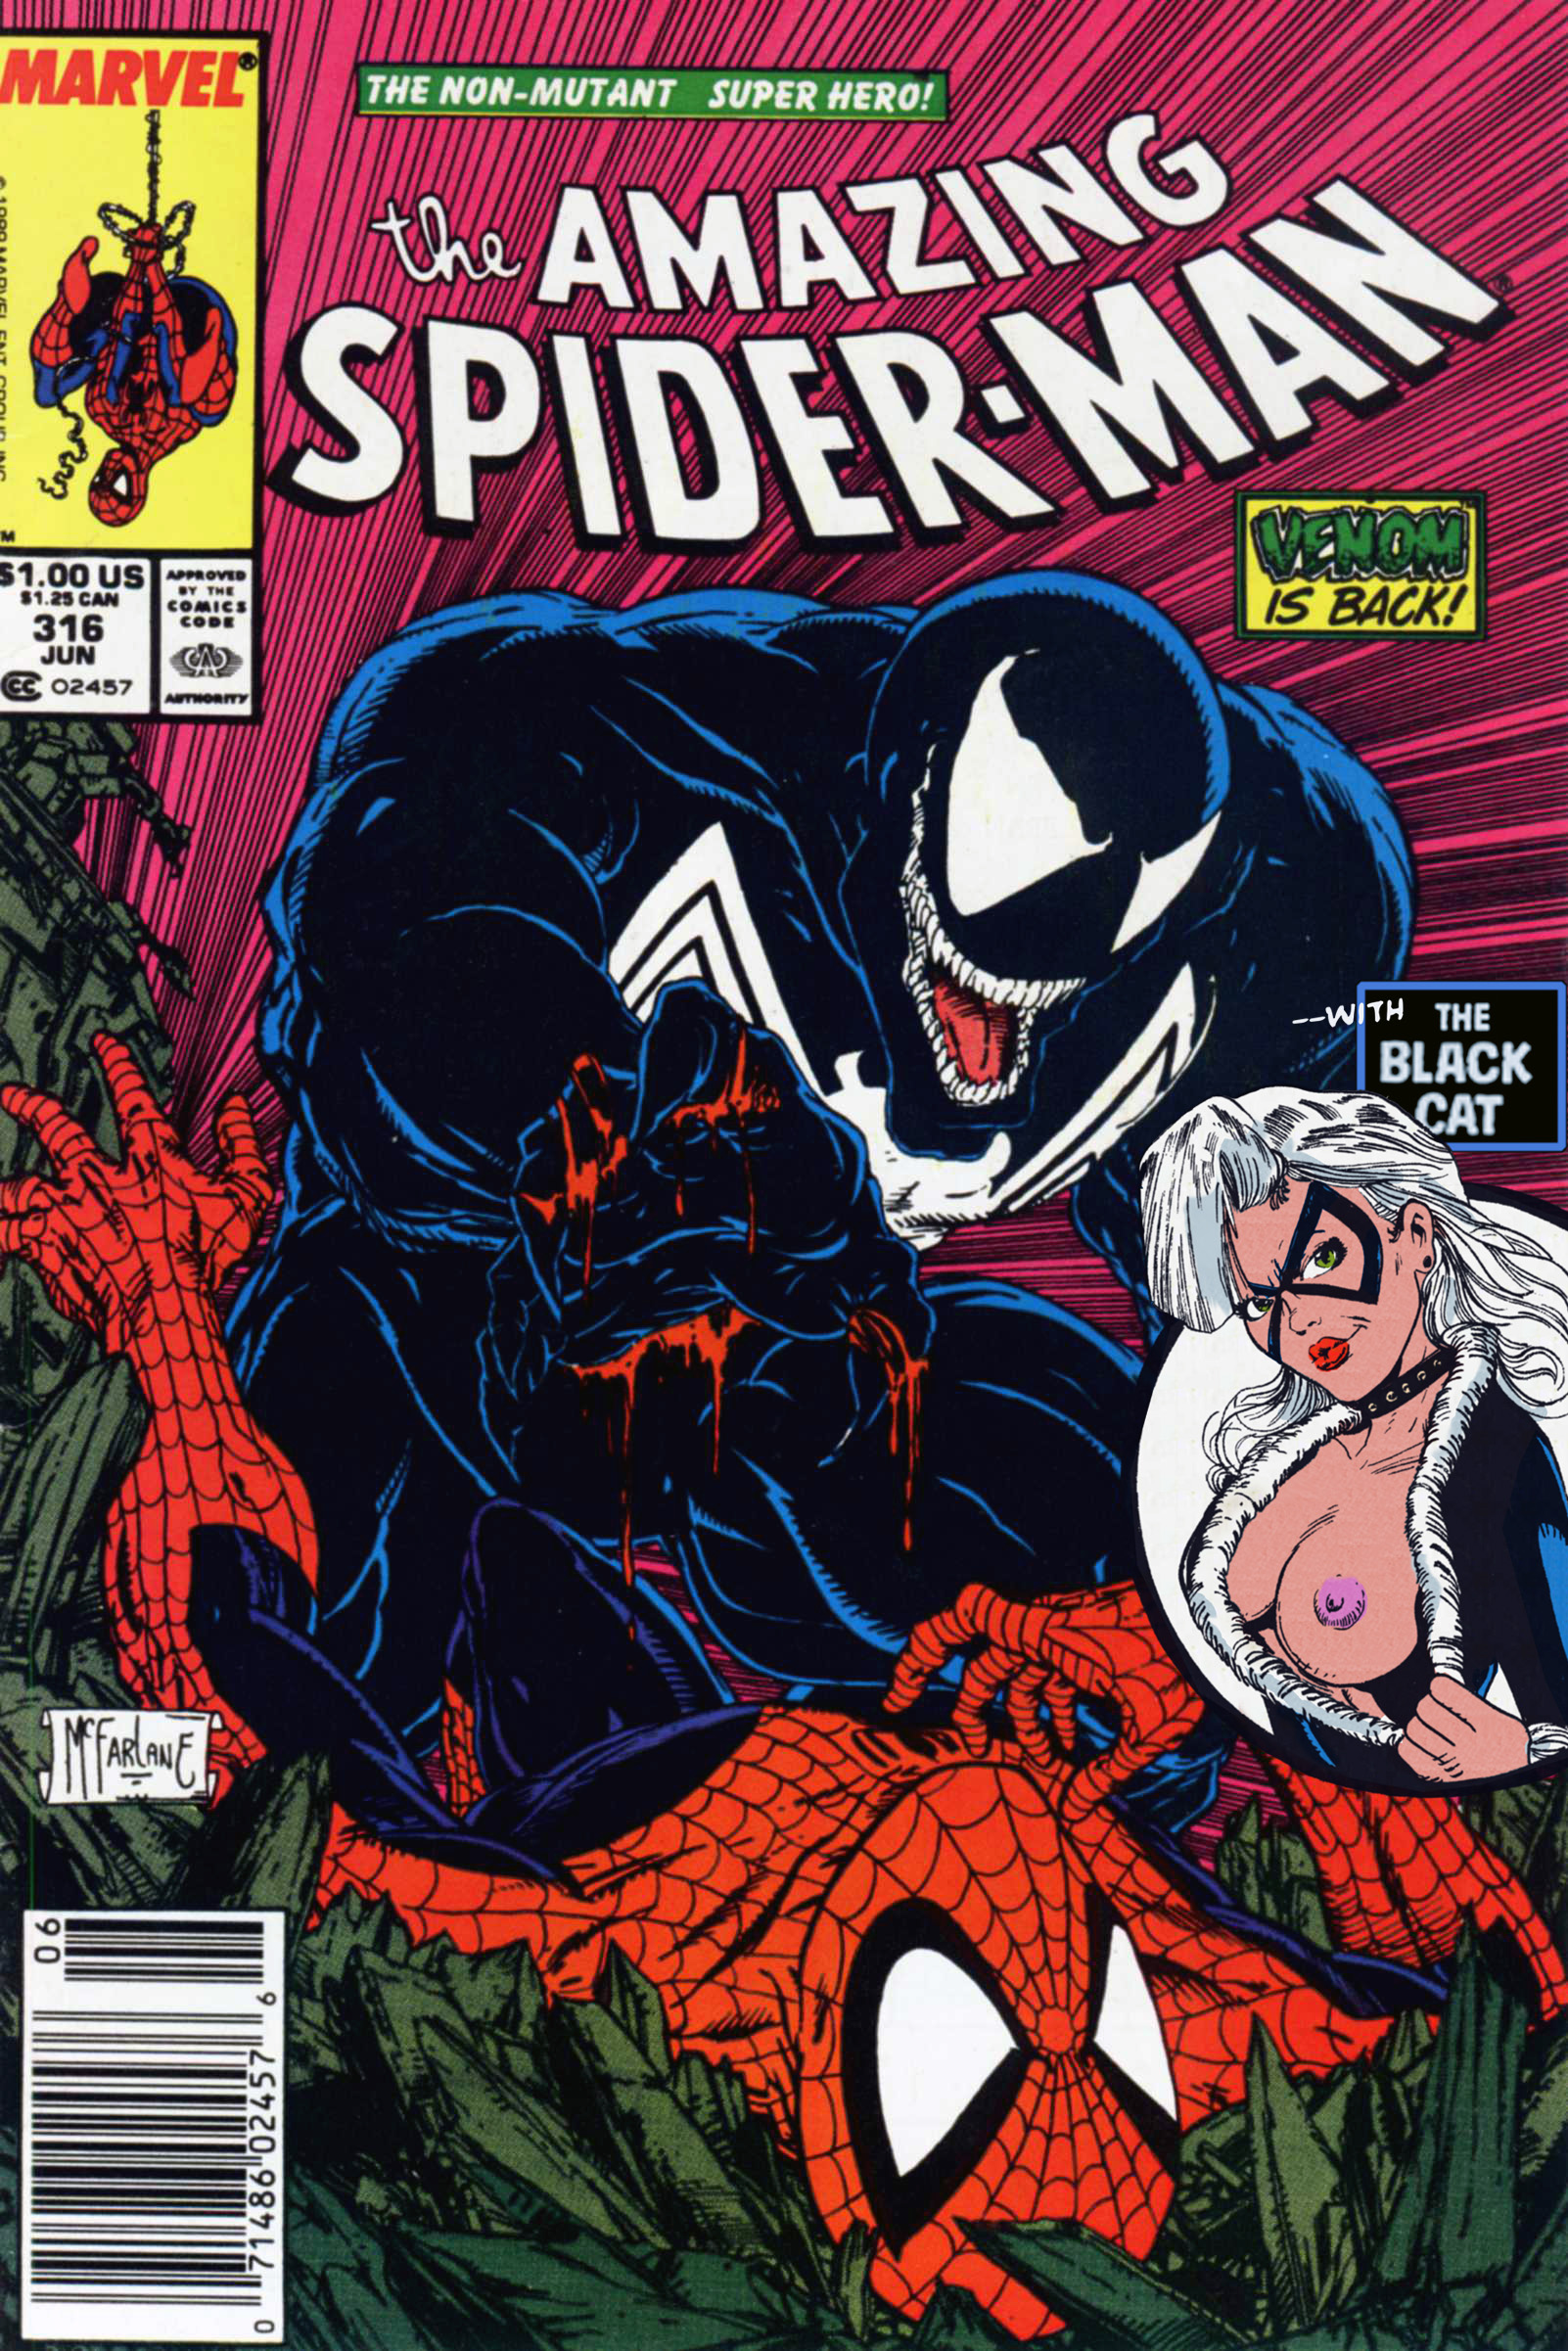 SureFap xxx porno Spider-Man - Amazing Spider-Man - Venom is Back #316 (1989) - (Un-Censor Works)